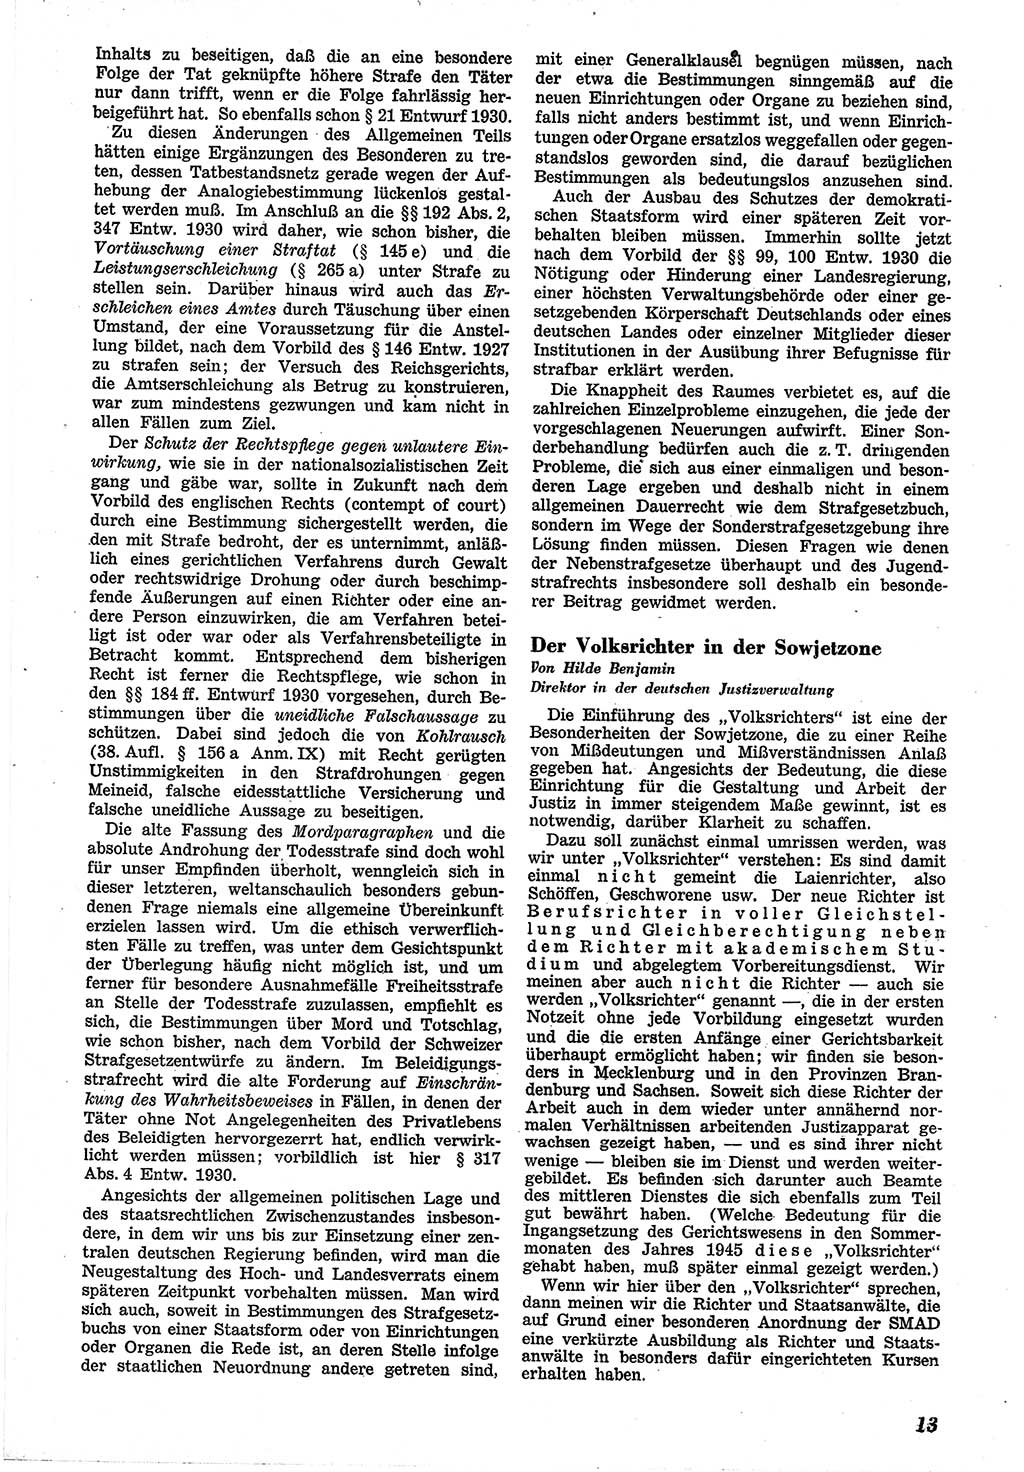 Neue Justiz (NJ), Zeitschrift für Recht und Rechtswissenschaft [Sowjetische Besatzungszone (SBZ) Deutschland], 1. Jahrgang 1947, Seite 13 (NJ SBZ Dtl. 1947, S. 13)